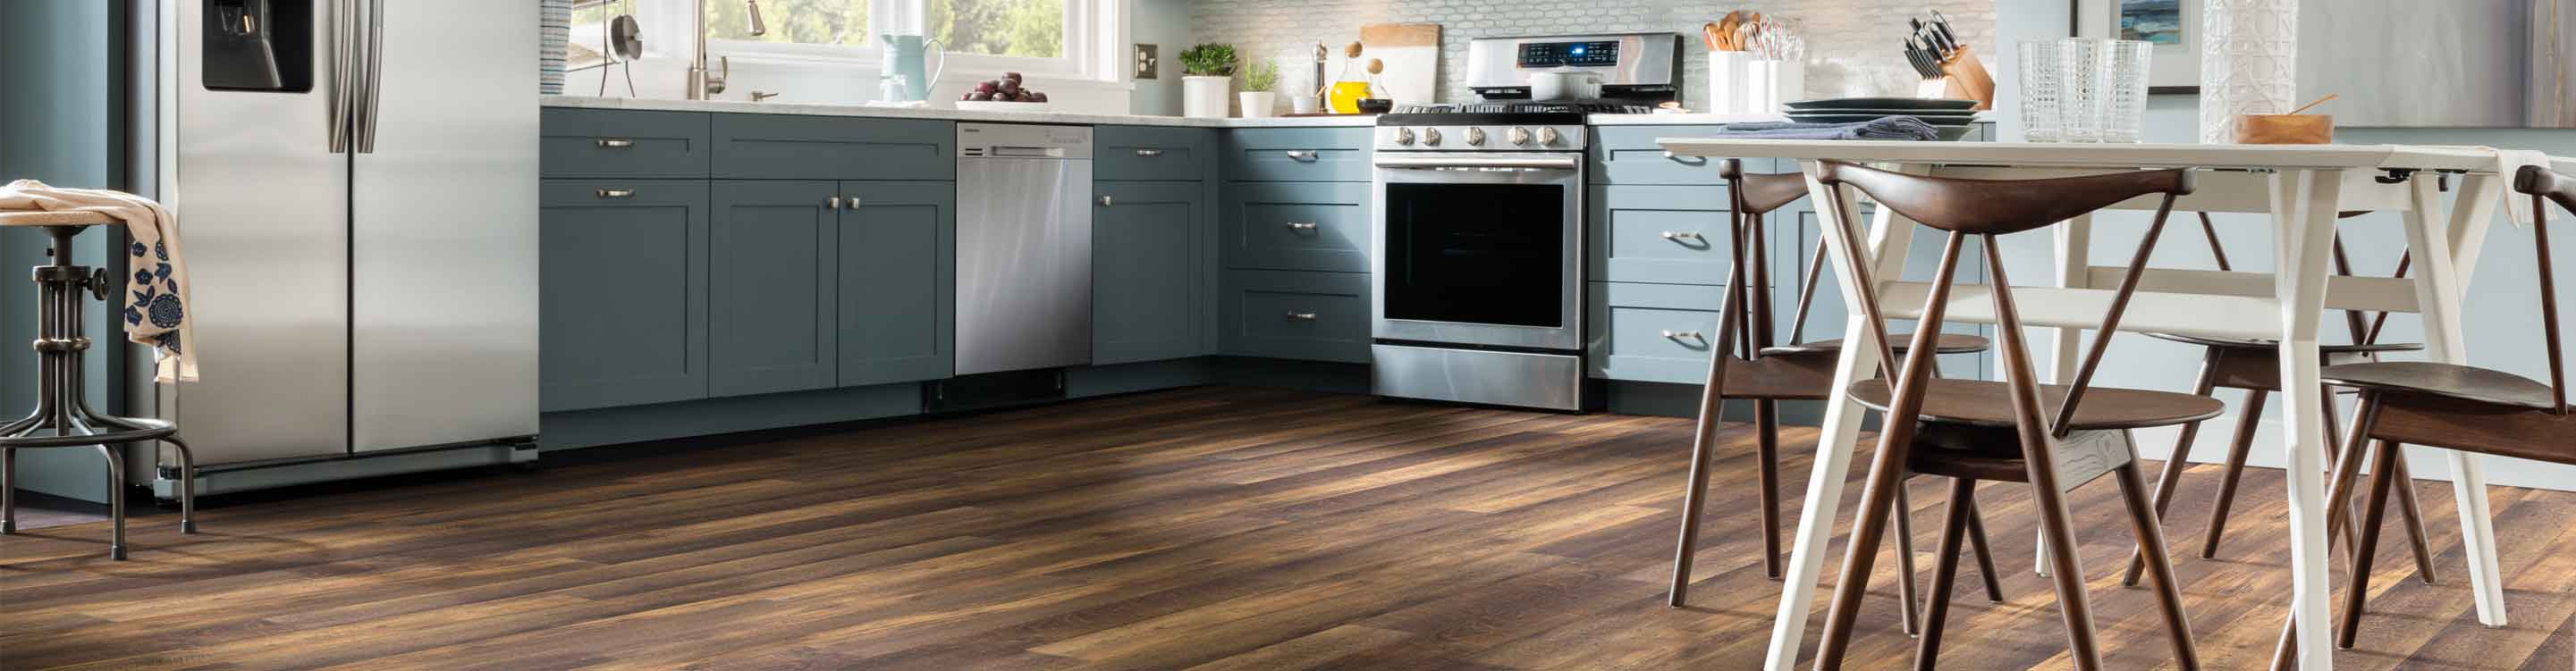 wood look vinyl flooring in kitchen